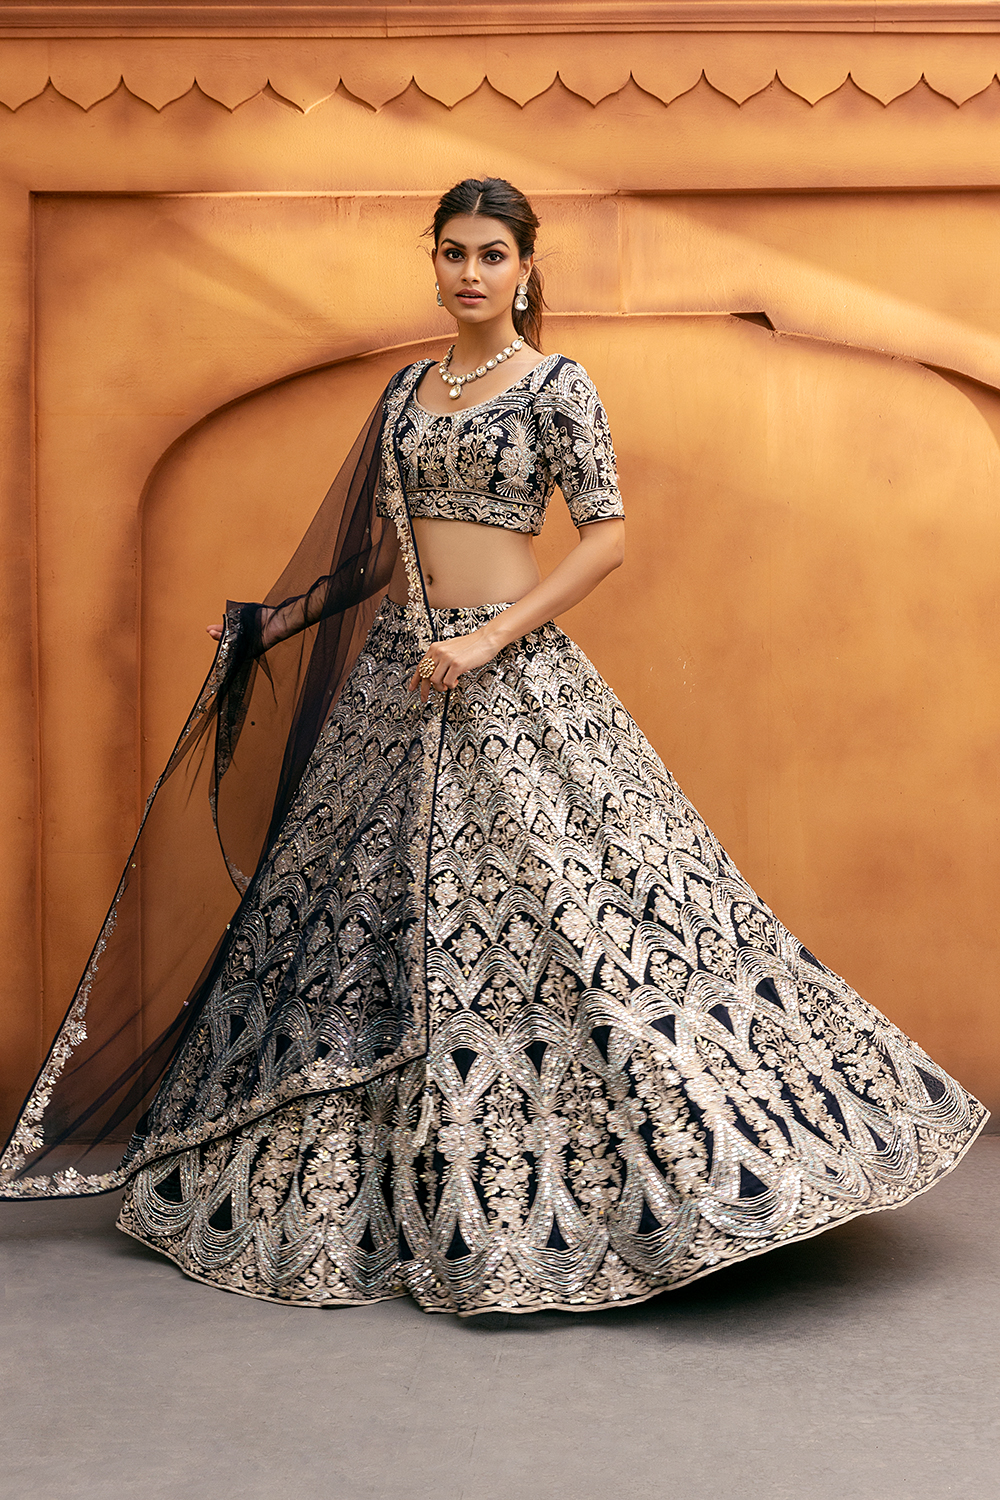 Indian Fashion, Salwar Kameez, Saree, Sari, Sarees, Saris, Indian Sarees,  Fashion India : SEASONSINDIA | Indian fashion, Fashion, Indian wedding dress